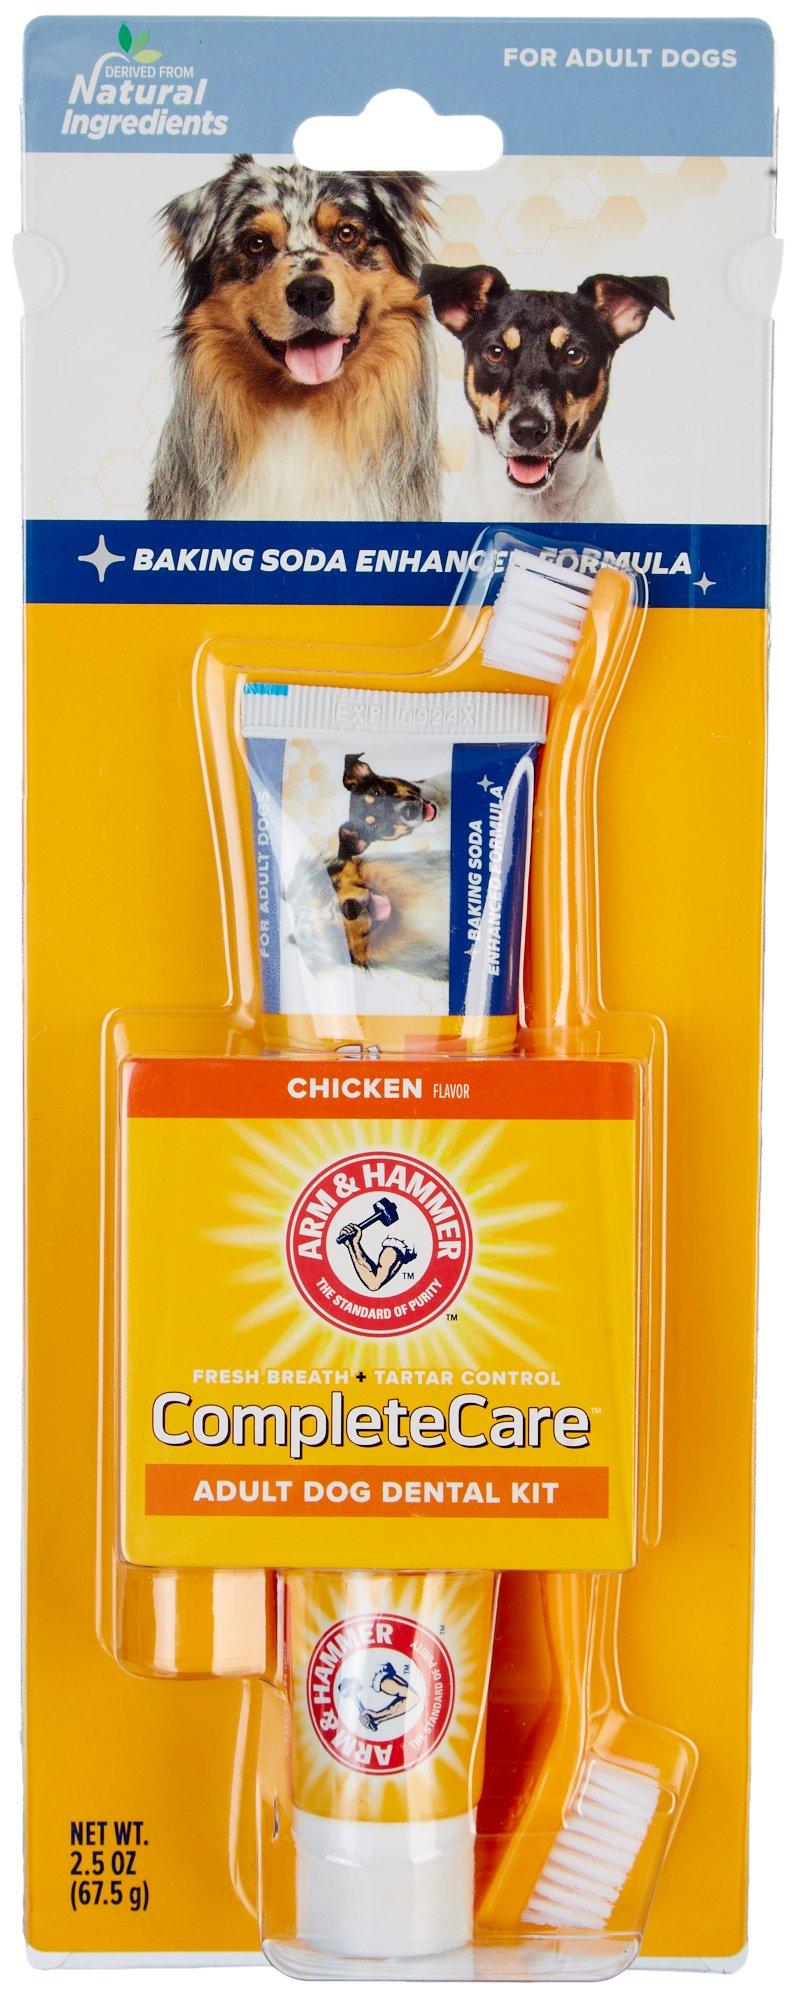 Chicken Flavor Adult Dog Dental Kit